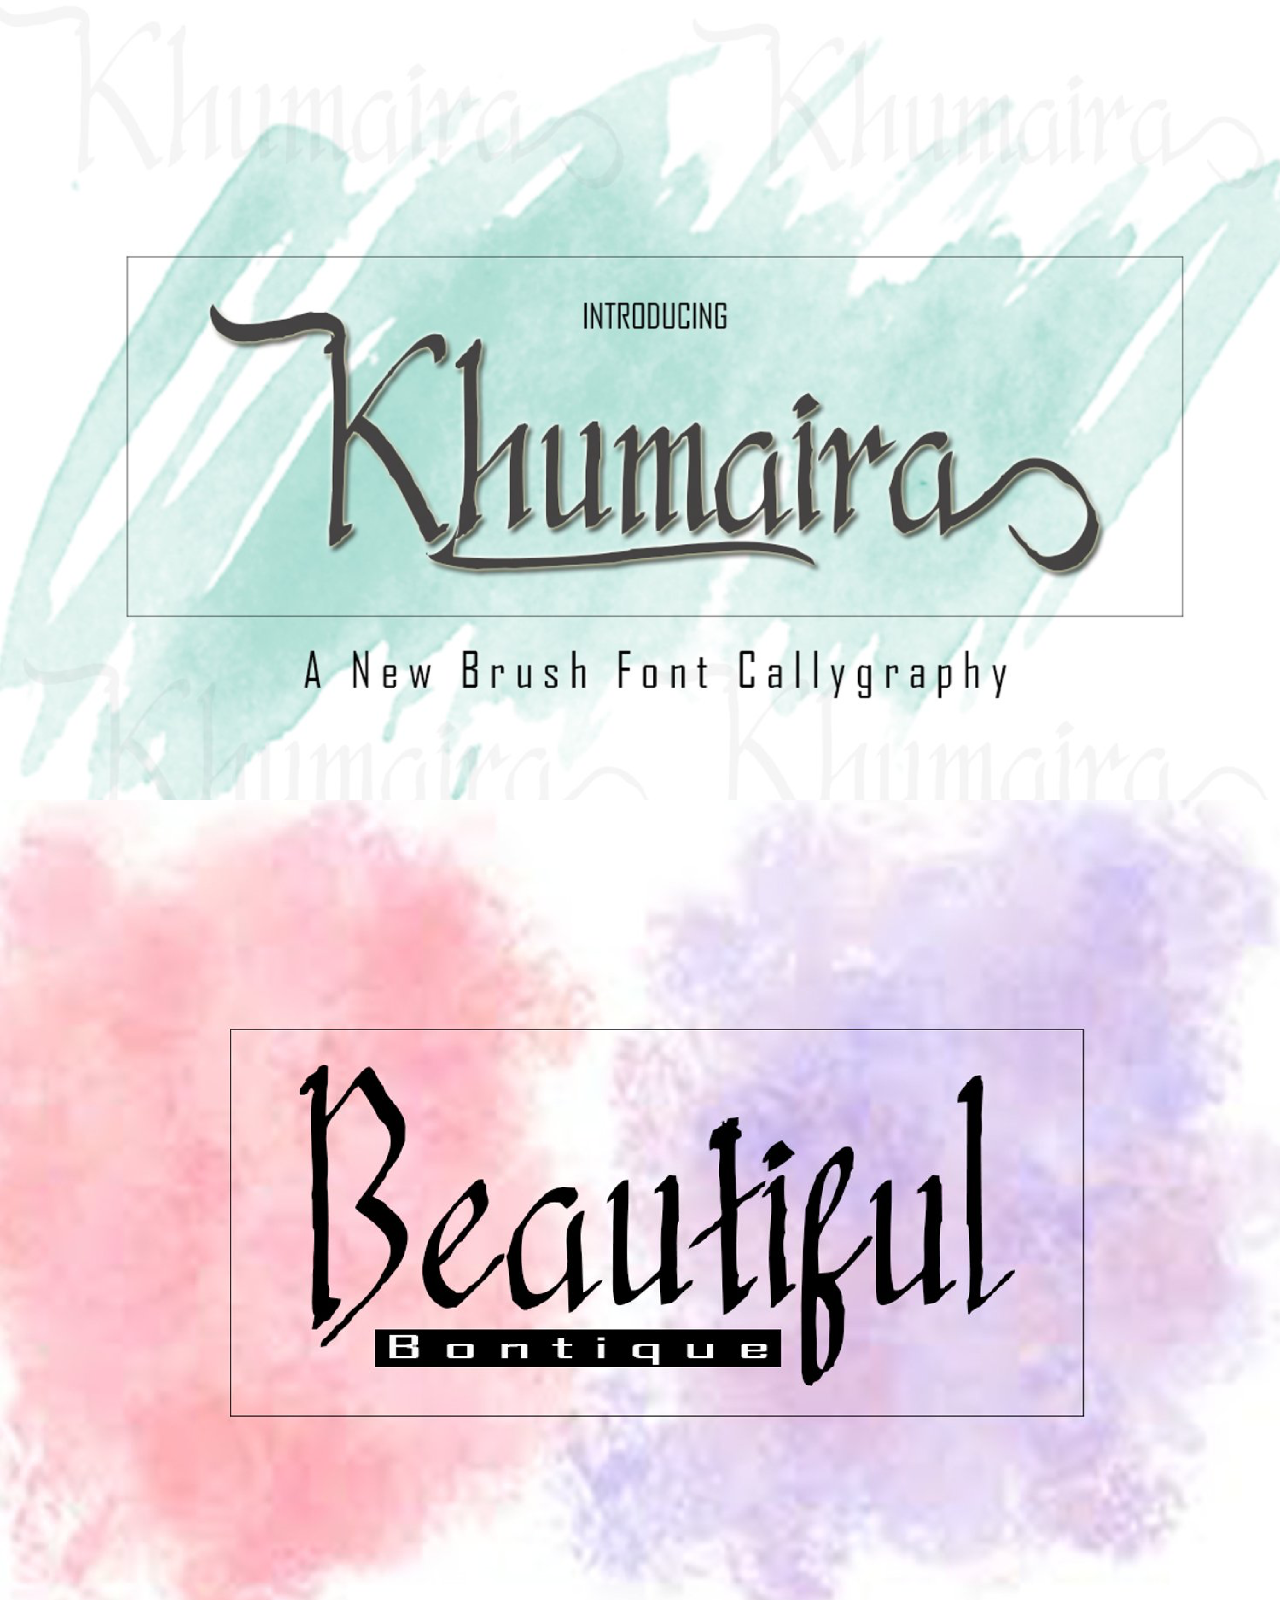 Khumaira brush pinterest image preview.